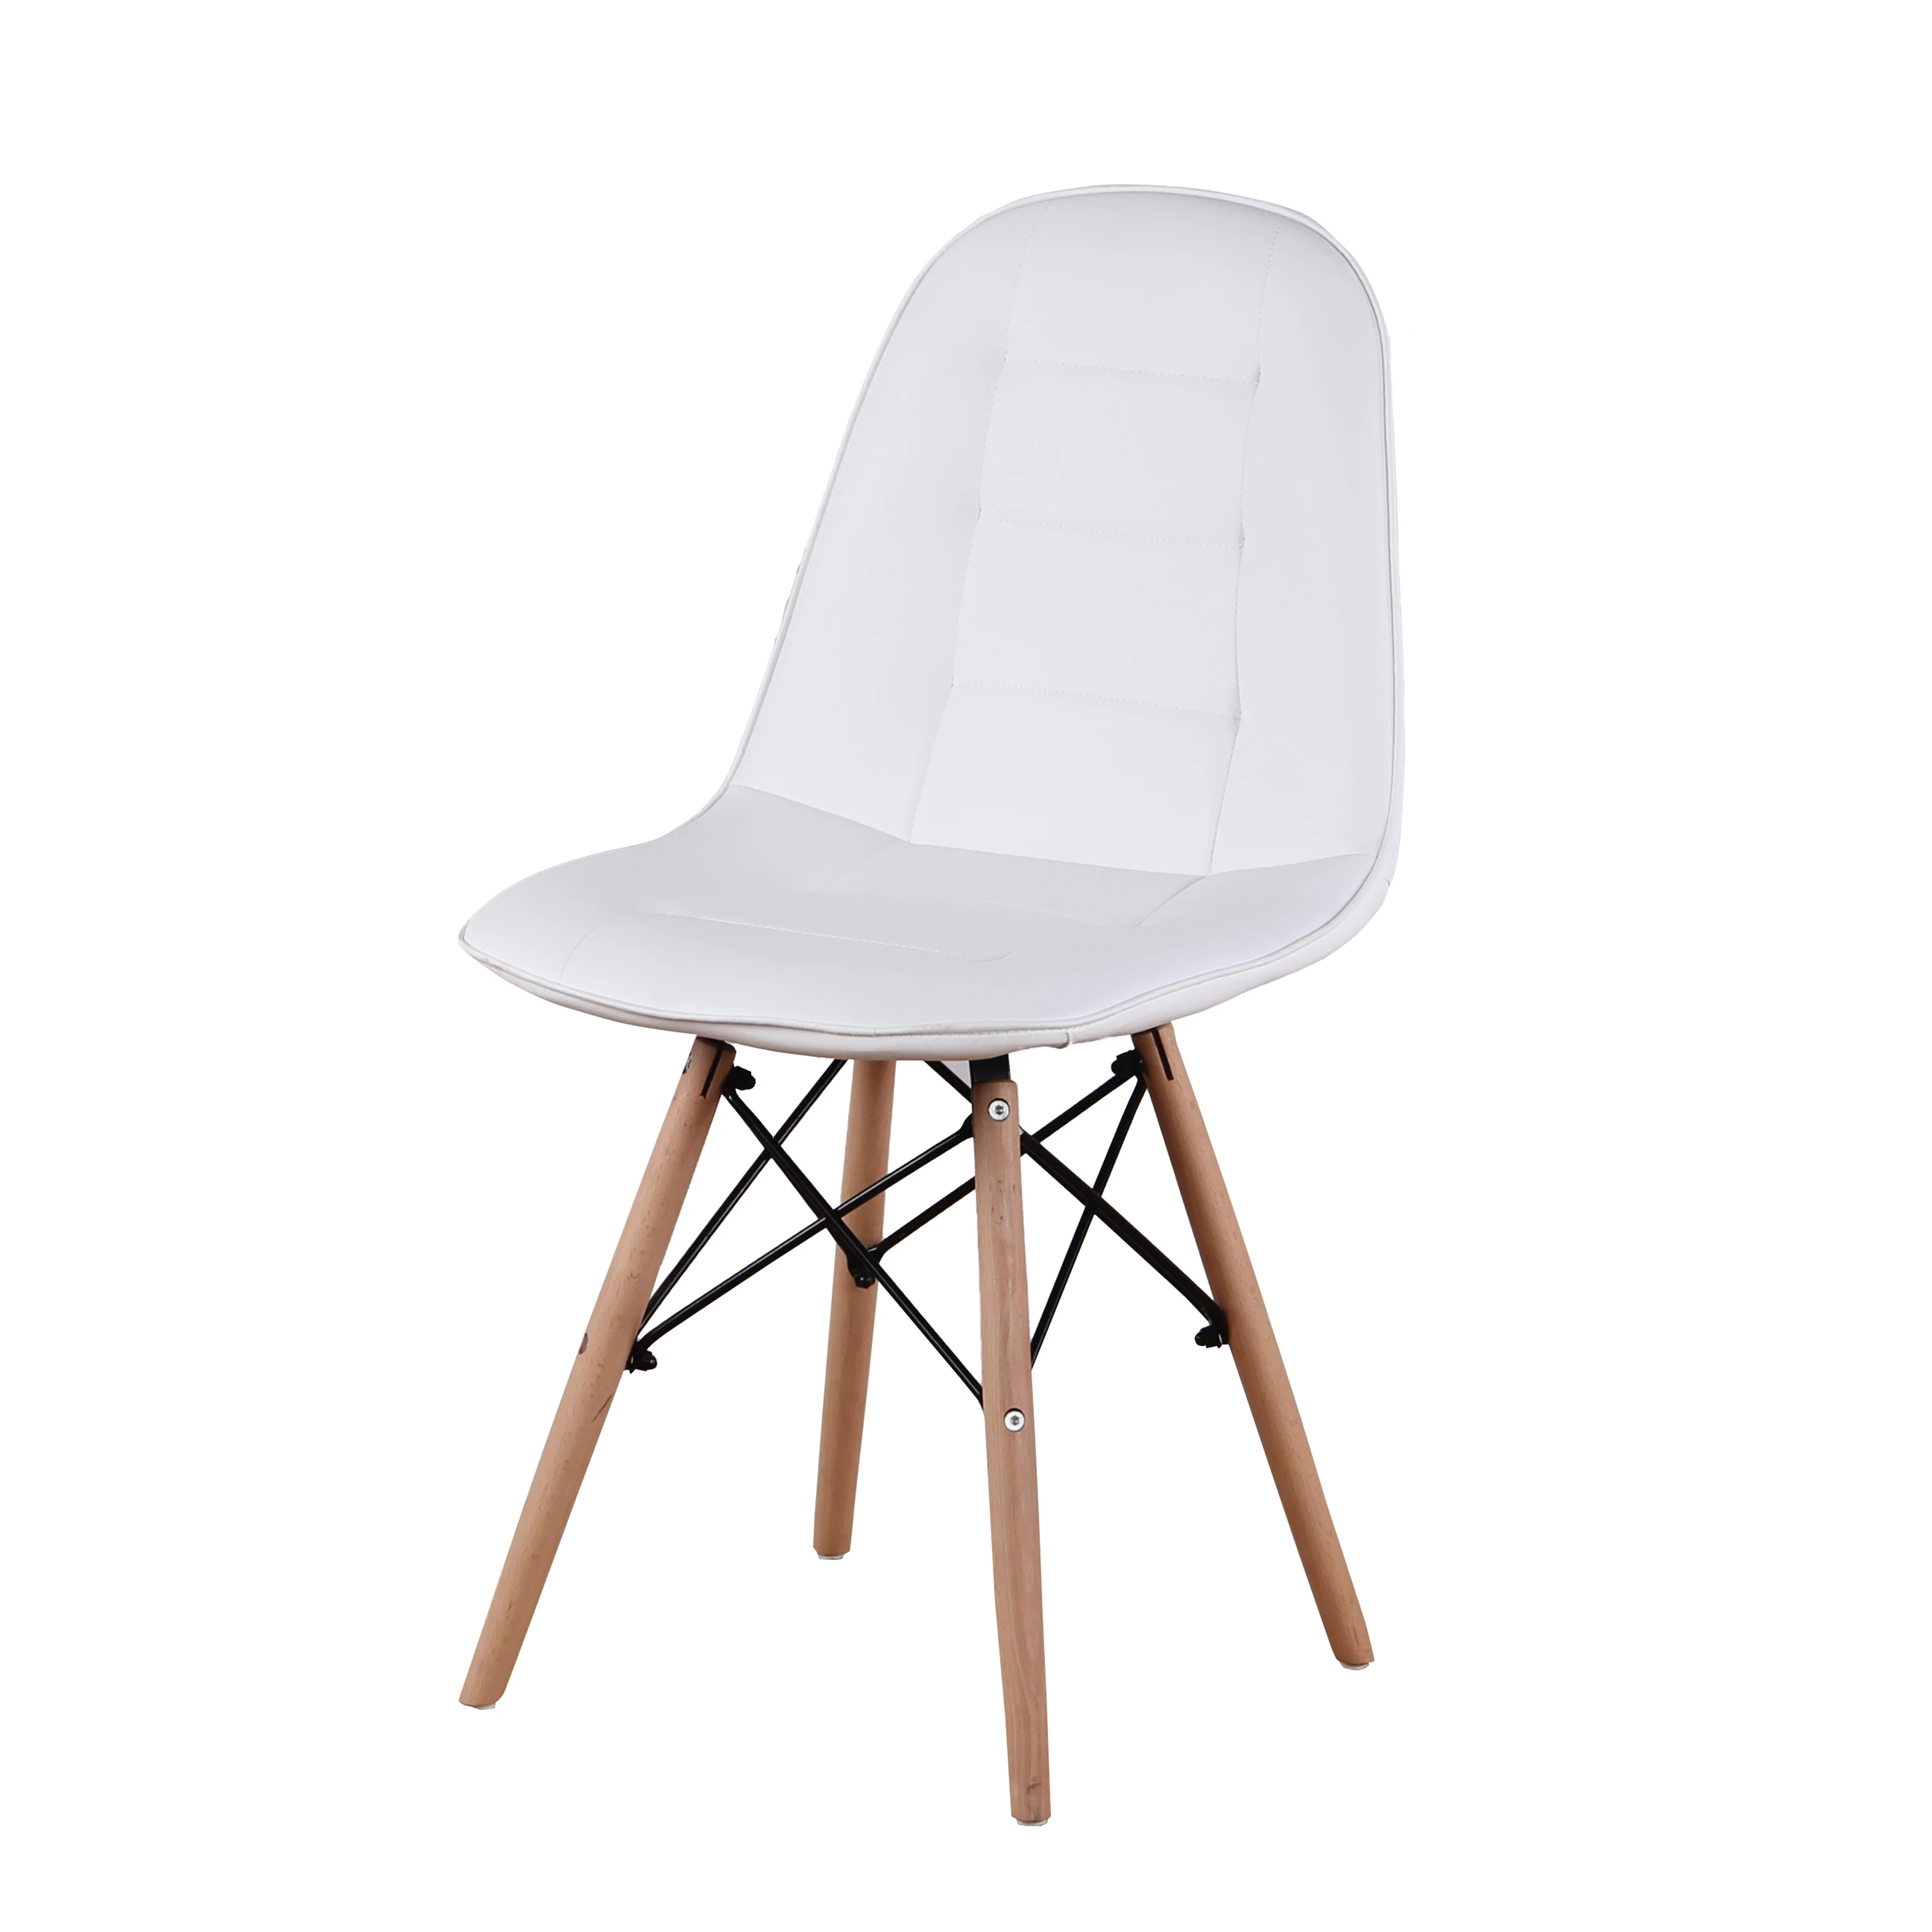 Набор из 4 современных обеденных стульев, кресла в стиле ретро, высококачественные полиуретановые стулья с деревянными ножками, подходит дл... стулья и кресла